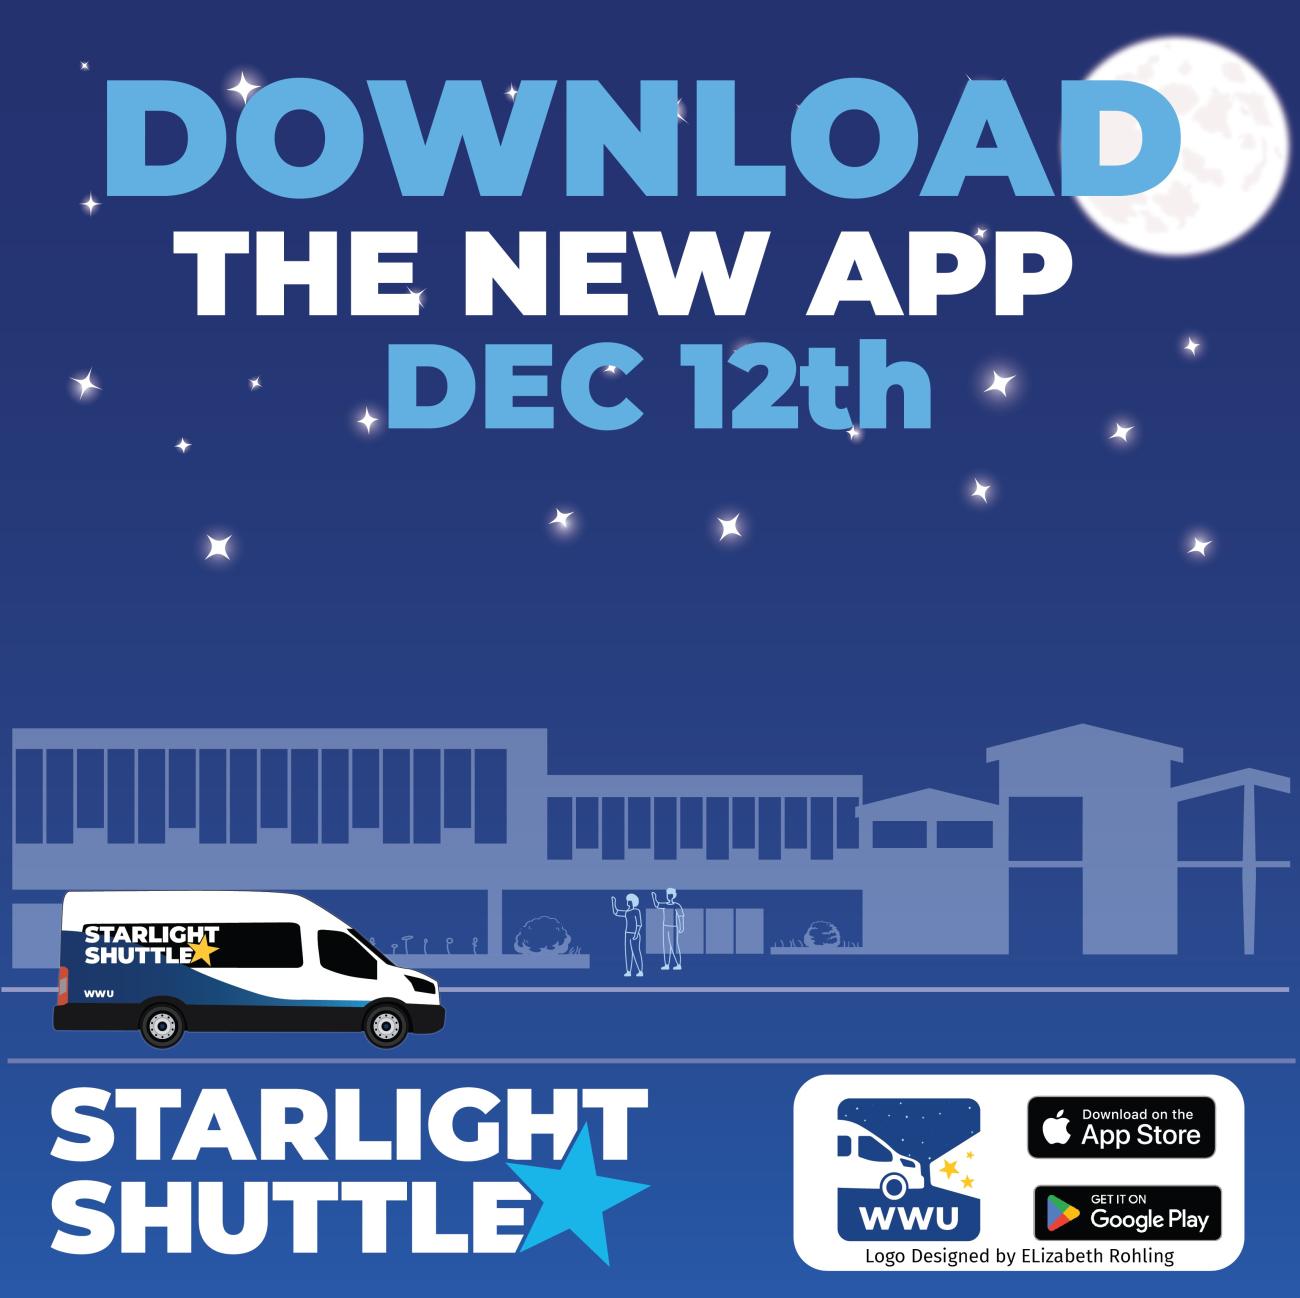 Starlight Shuttle poster recommending new app